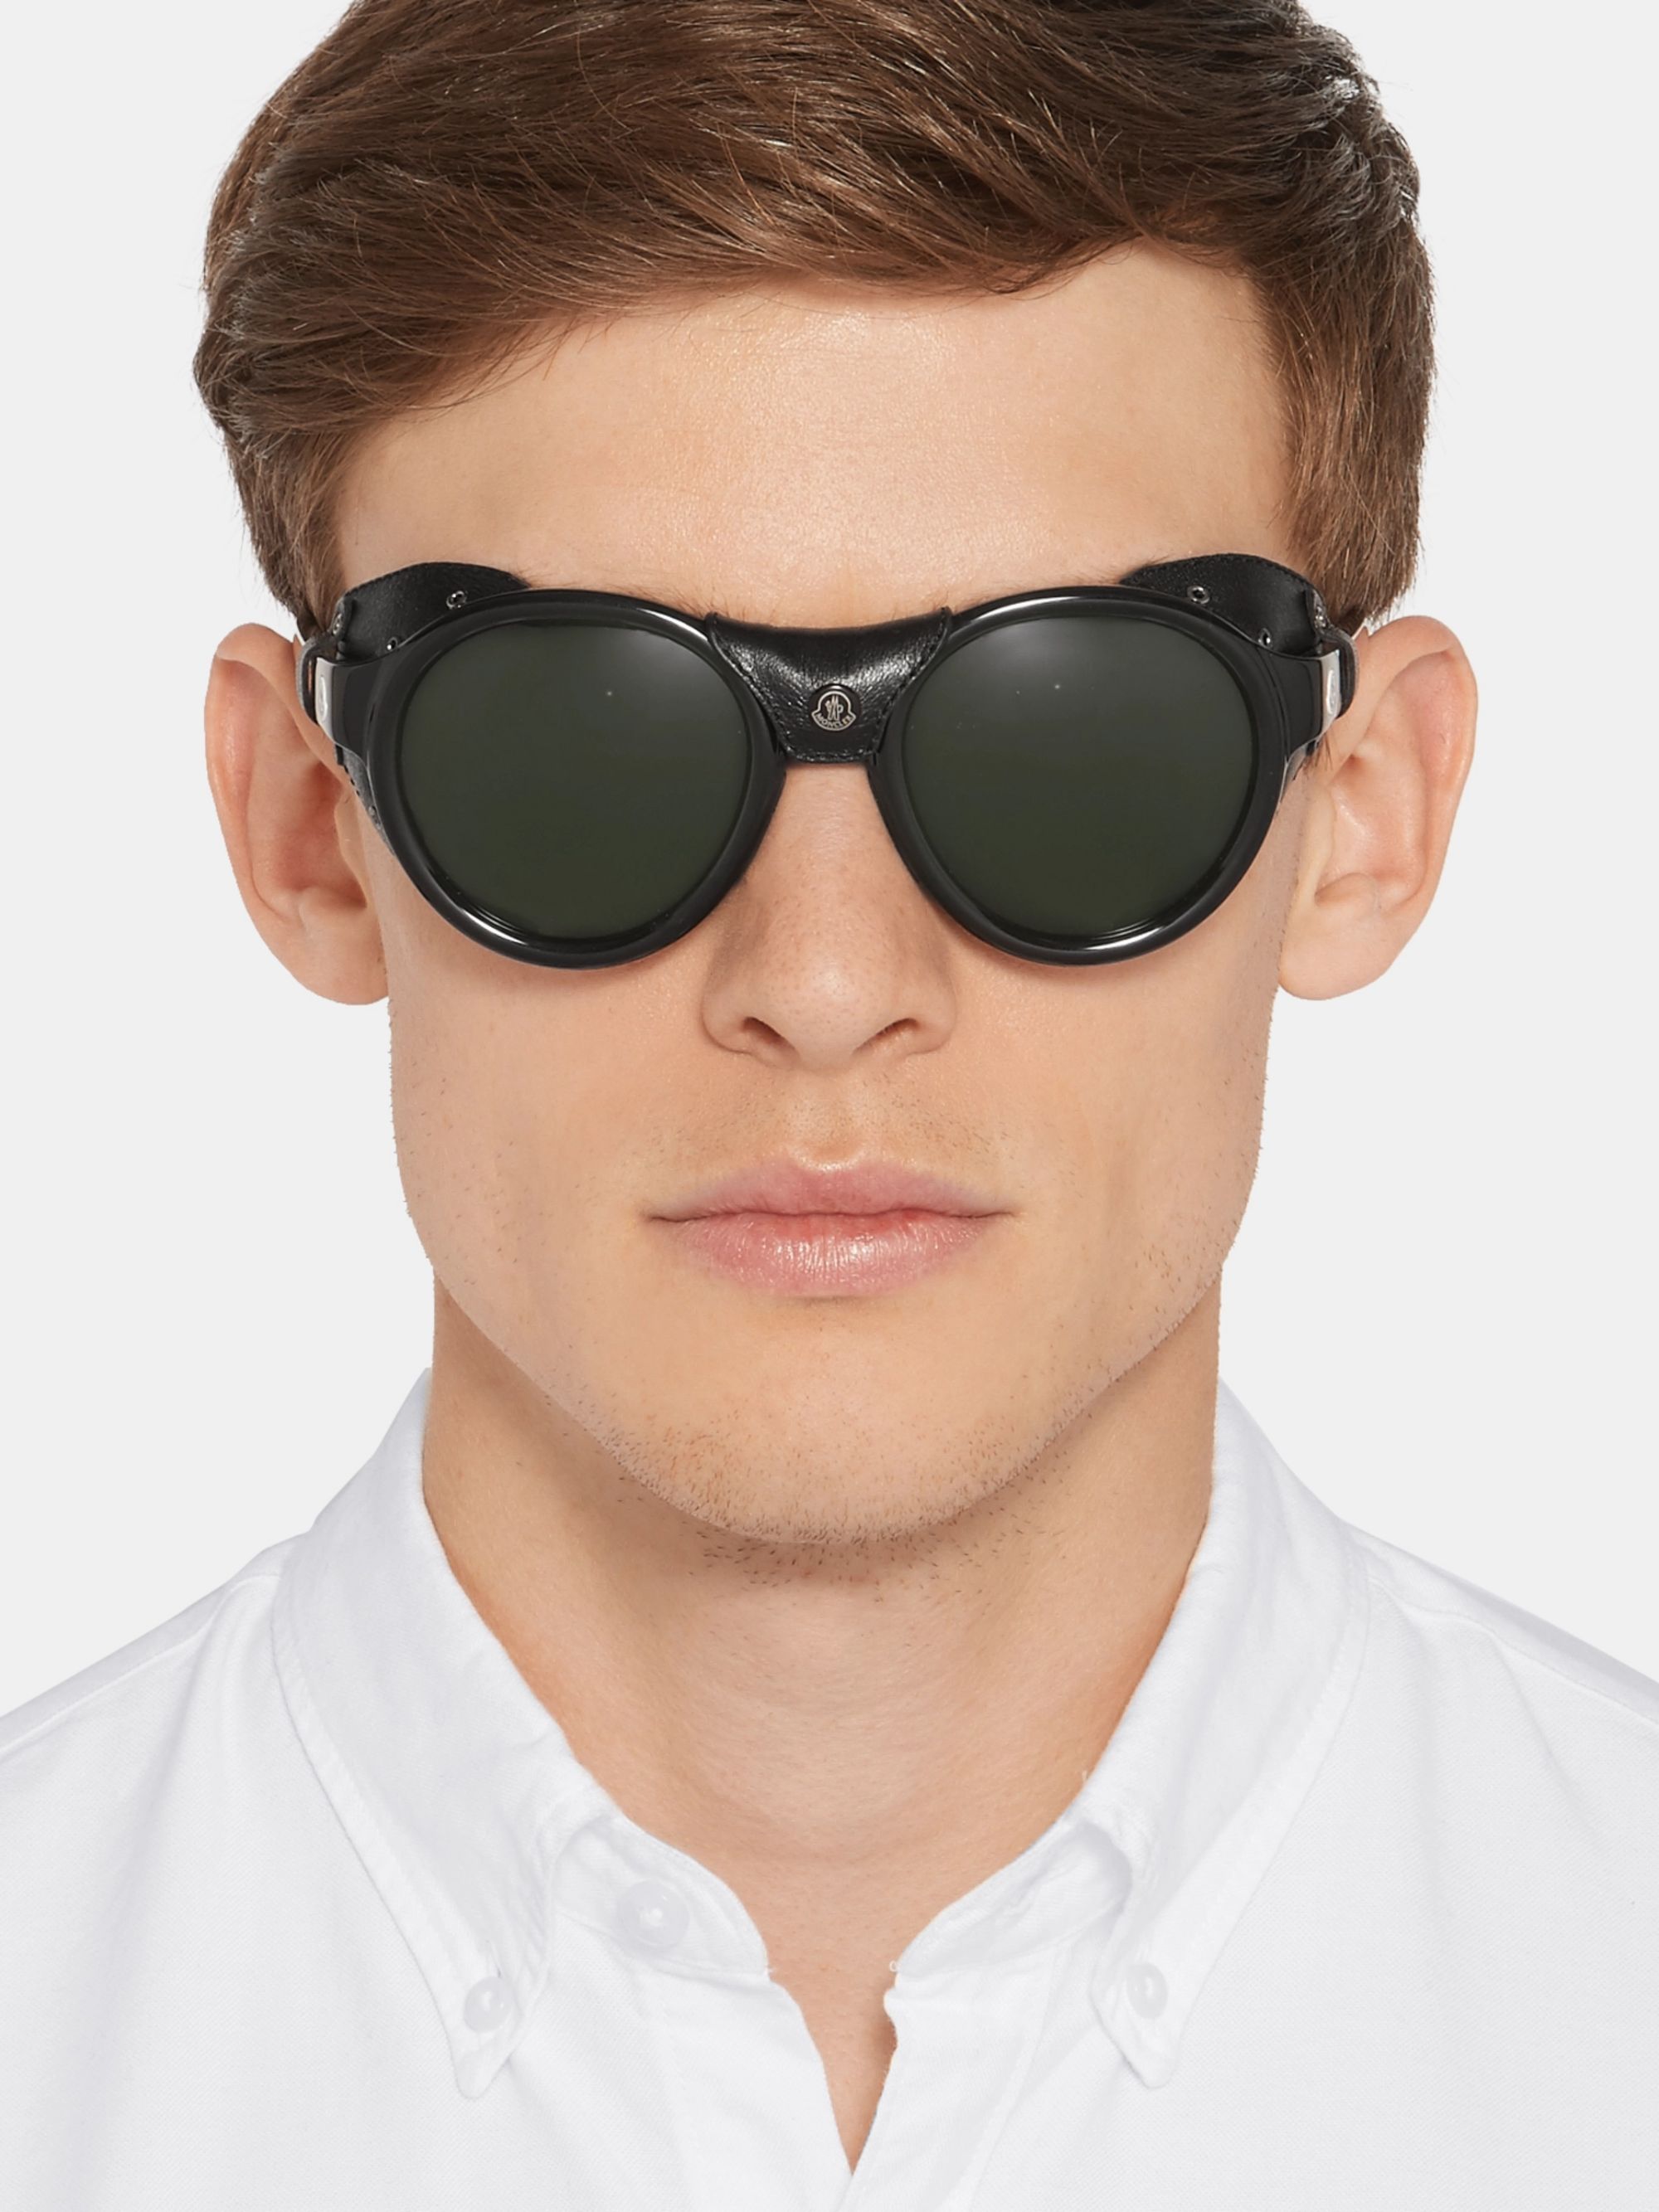 Очки солнцезащитные мужские на широкое лицо. Очки солнцезащитные мужские. Солнечные очки для мужчин. Стильные мужские очки. Очки мужские солнцезащитные модные.